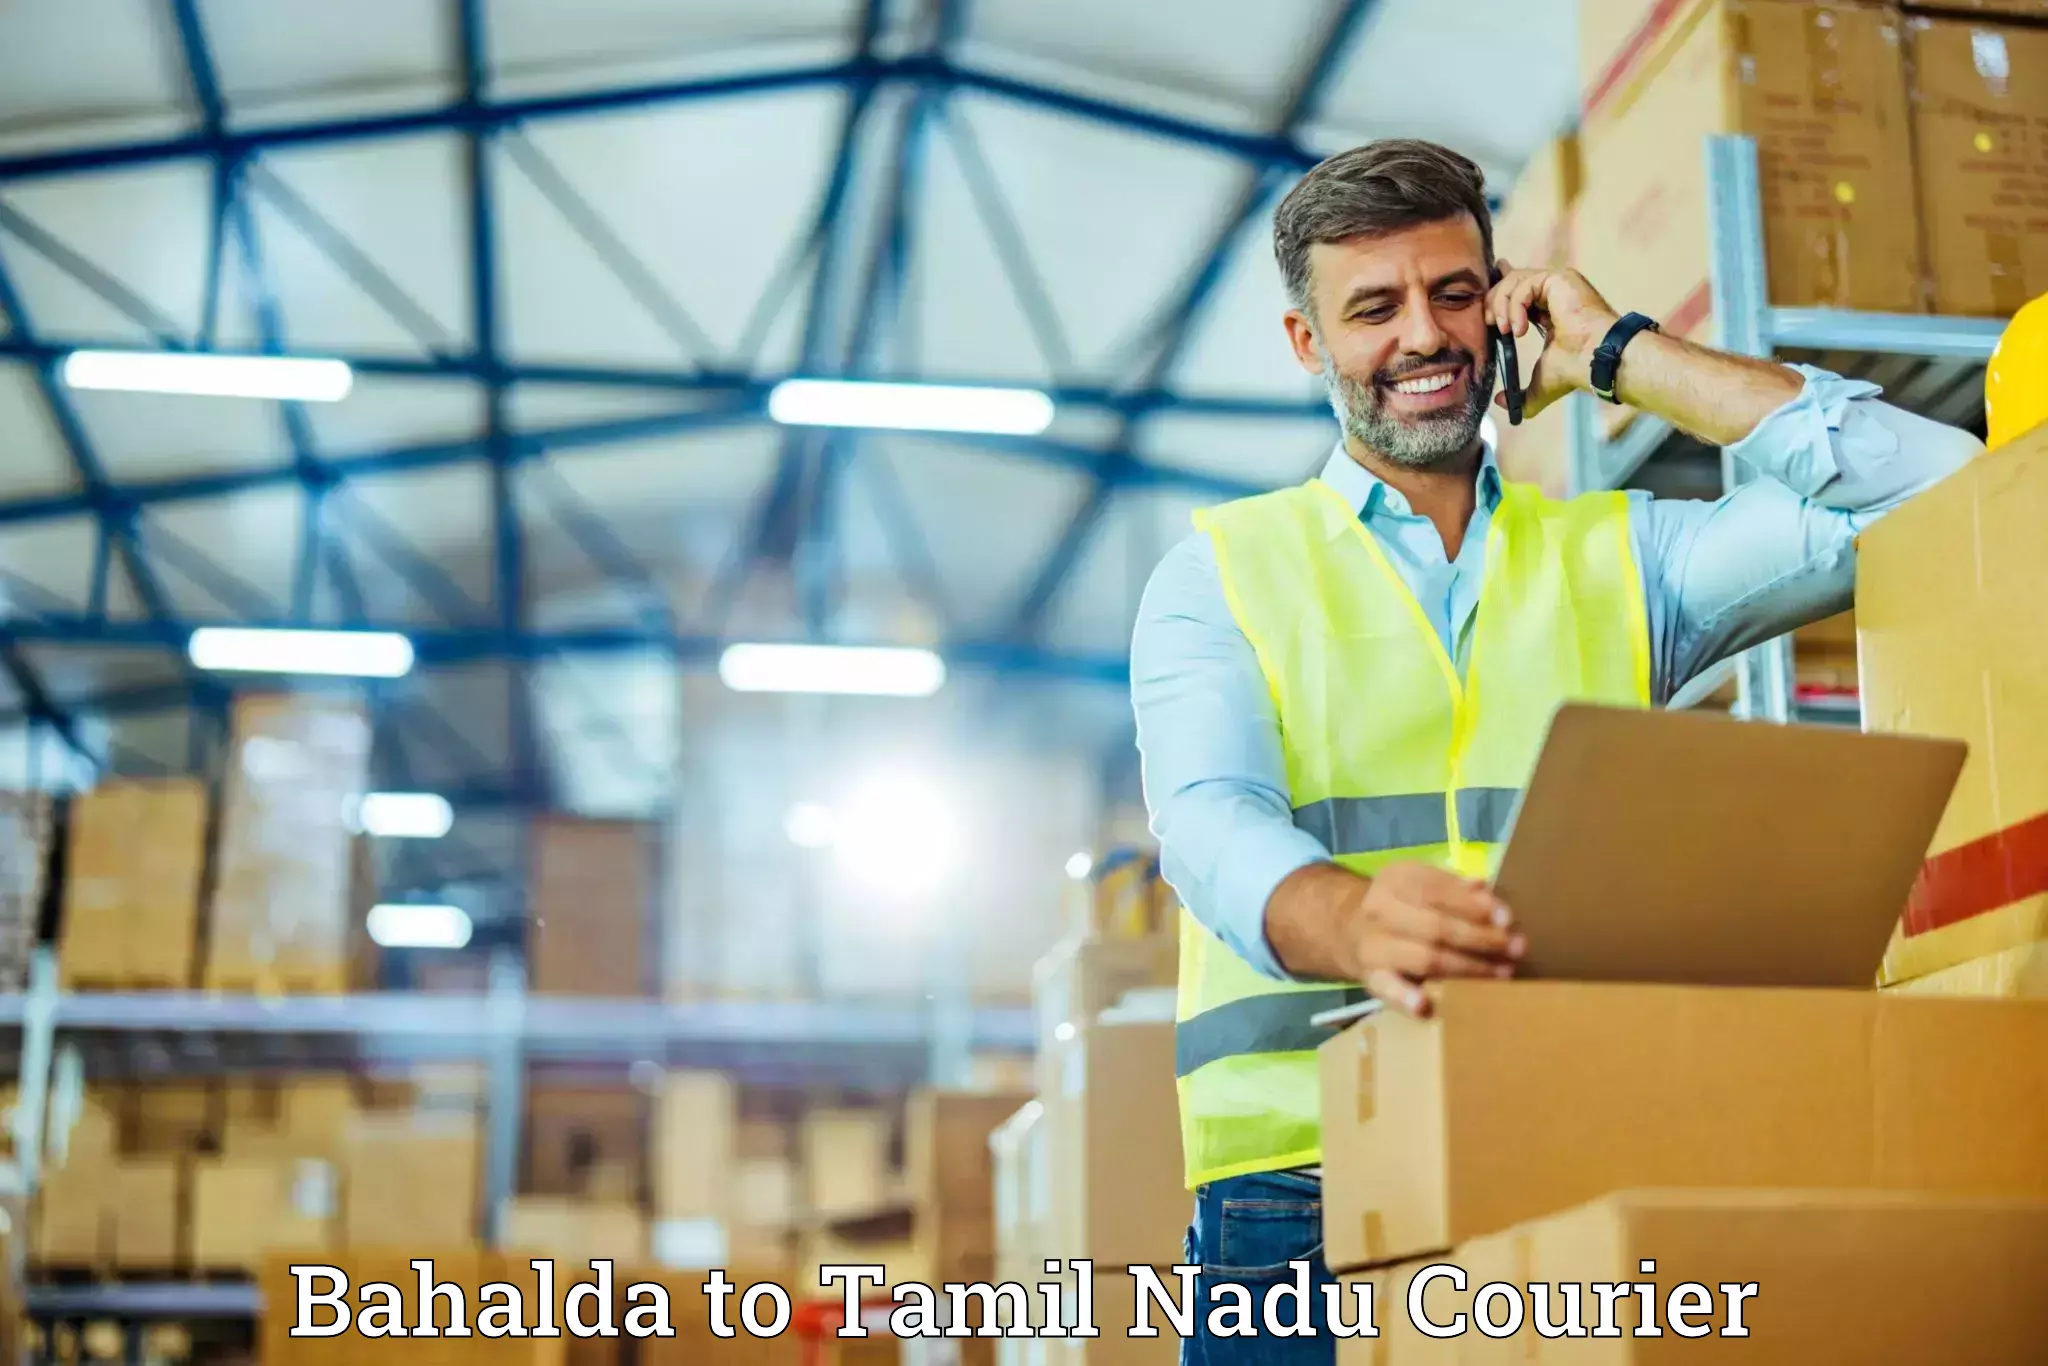 Efficient moving company Bahalda to Kodaikanal